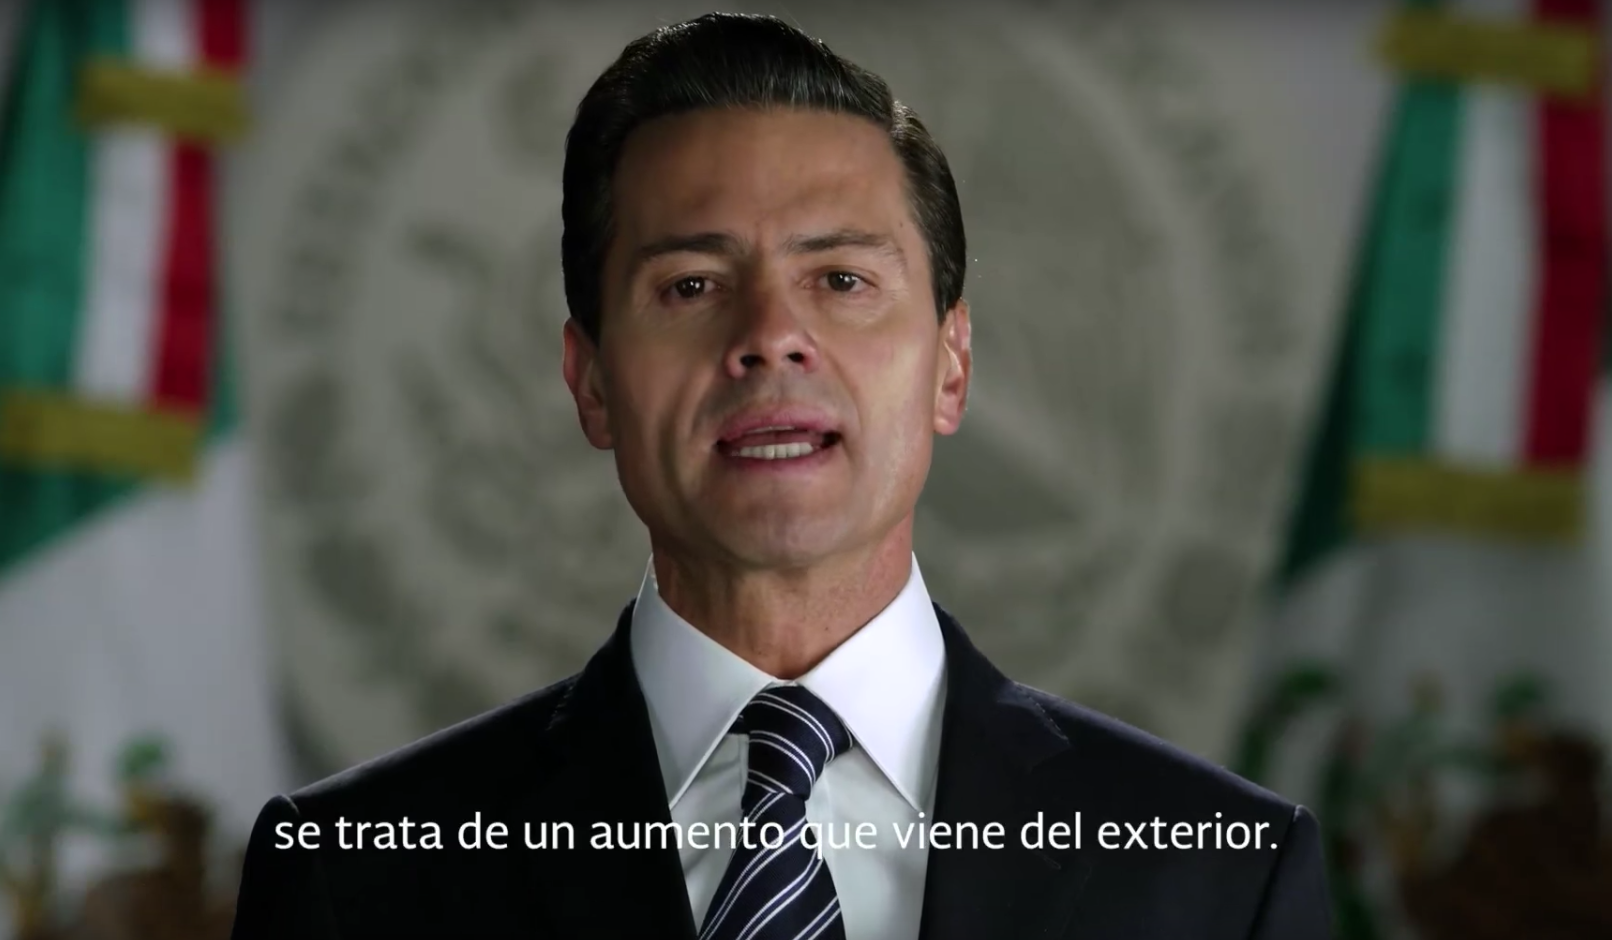 Gasolinazo es culpa de Calderón y “el exterior”: Peña Nieto